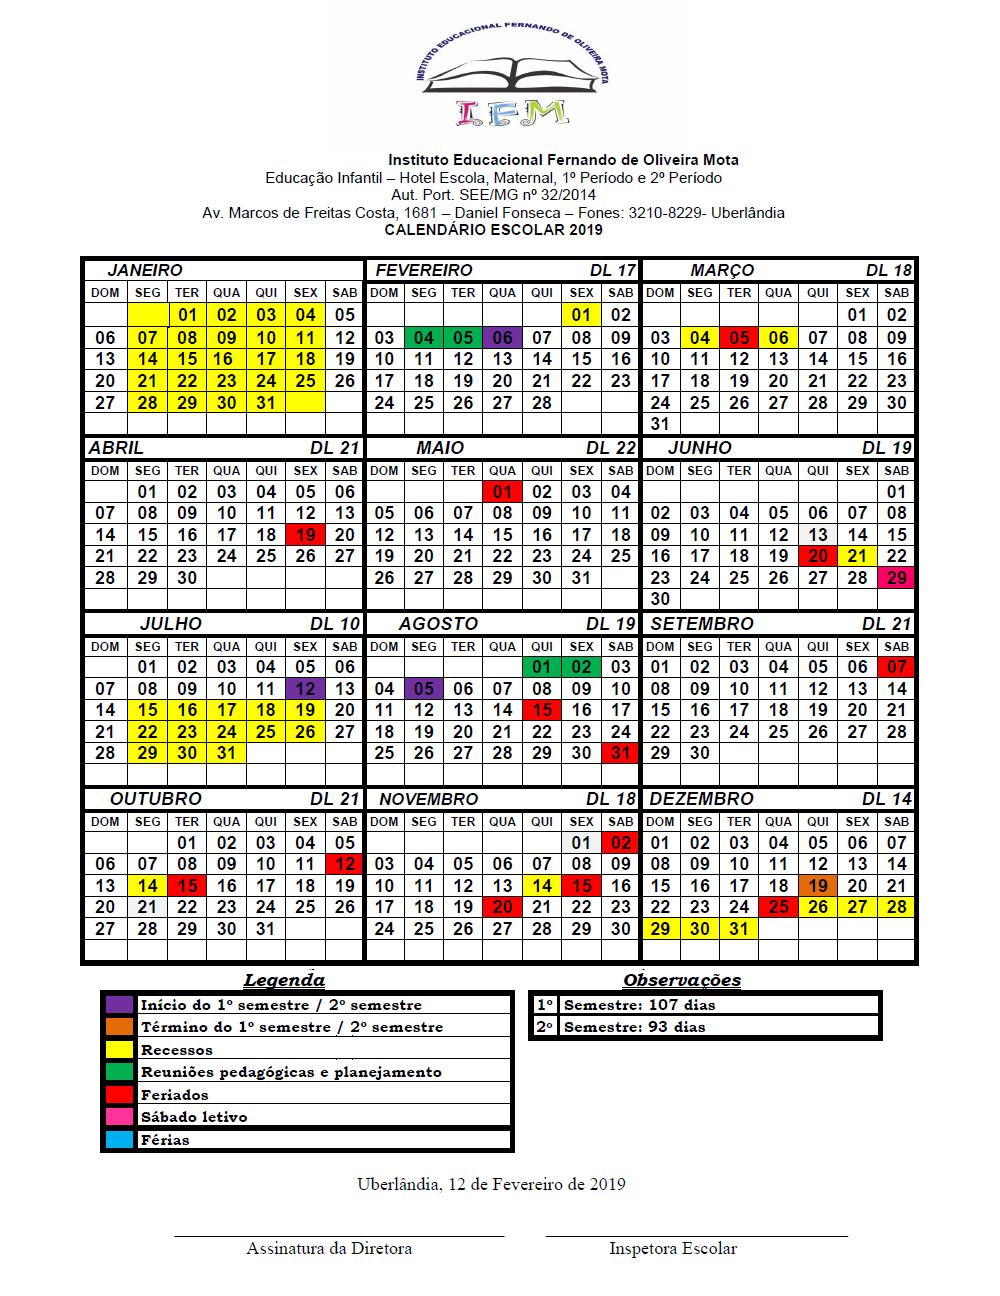 calendario-escolar-2019